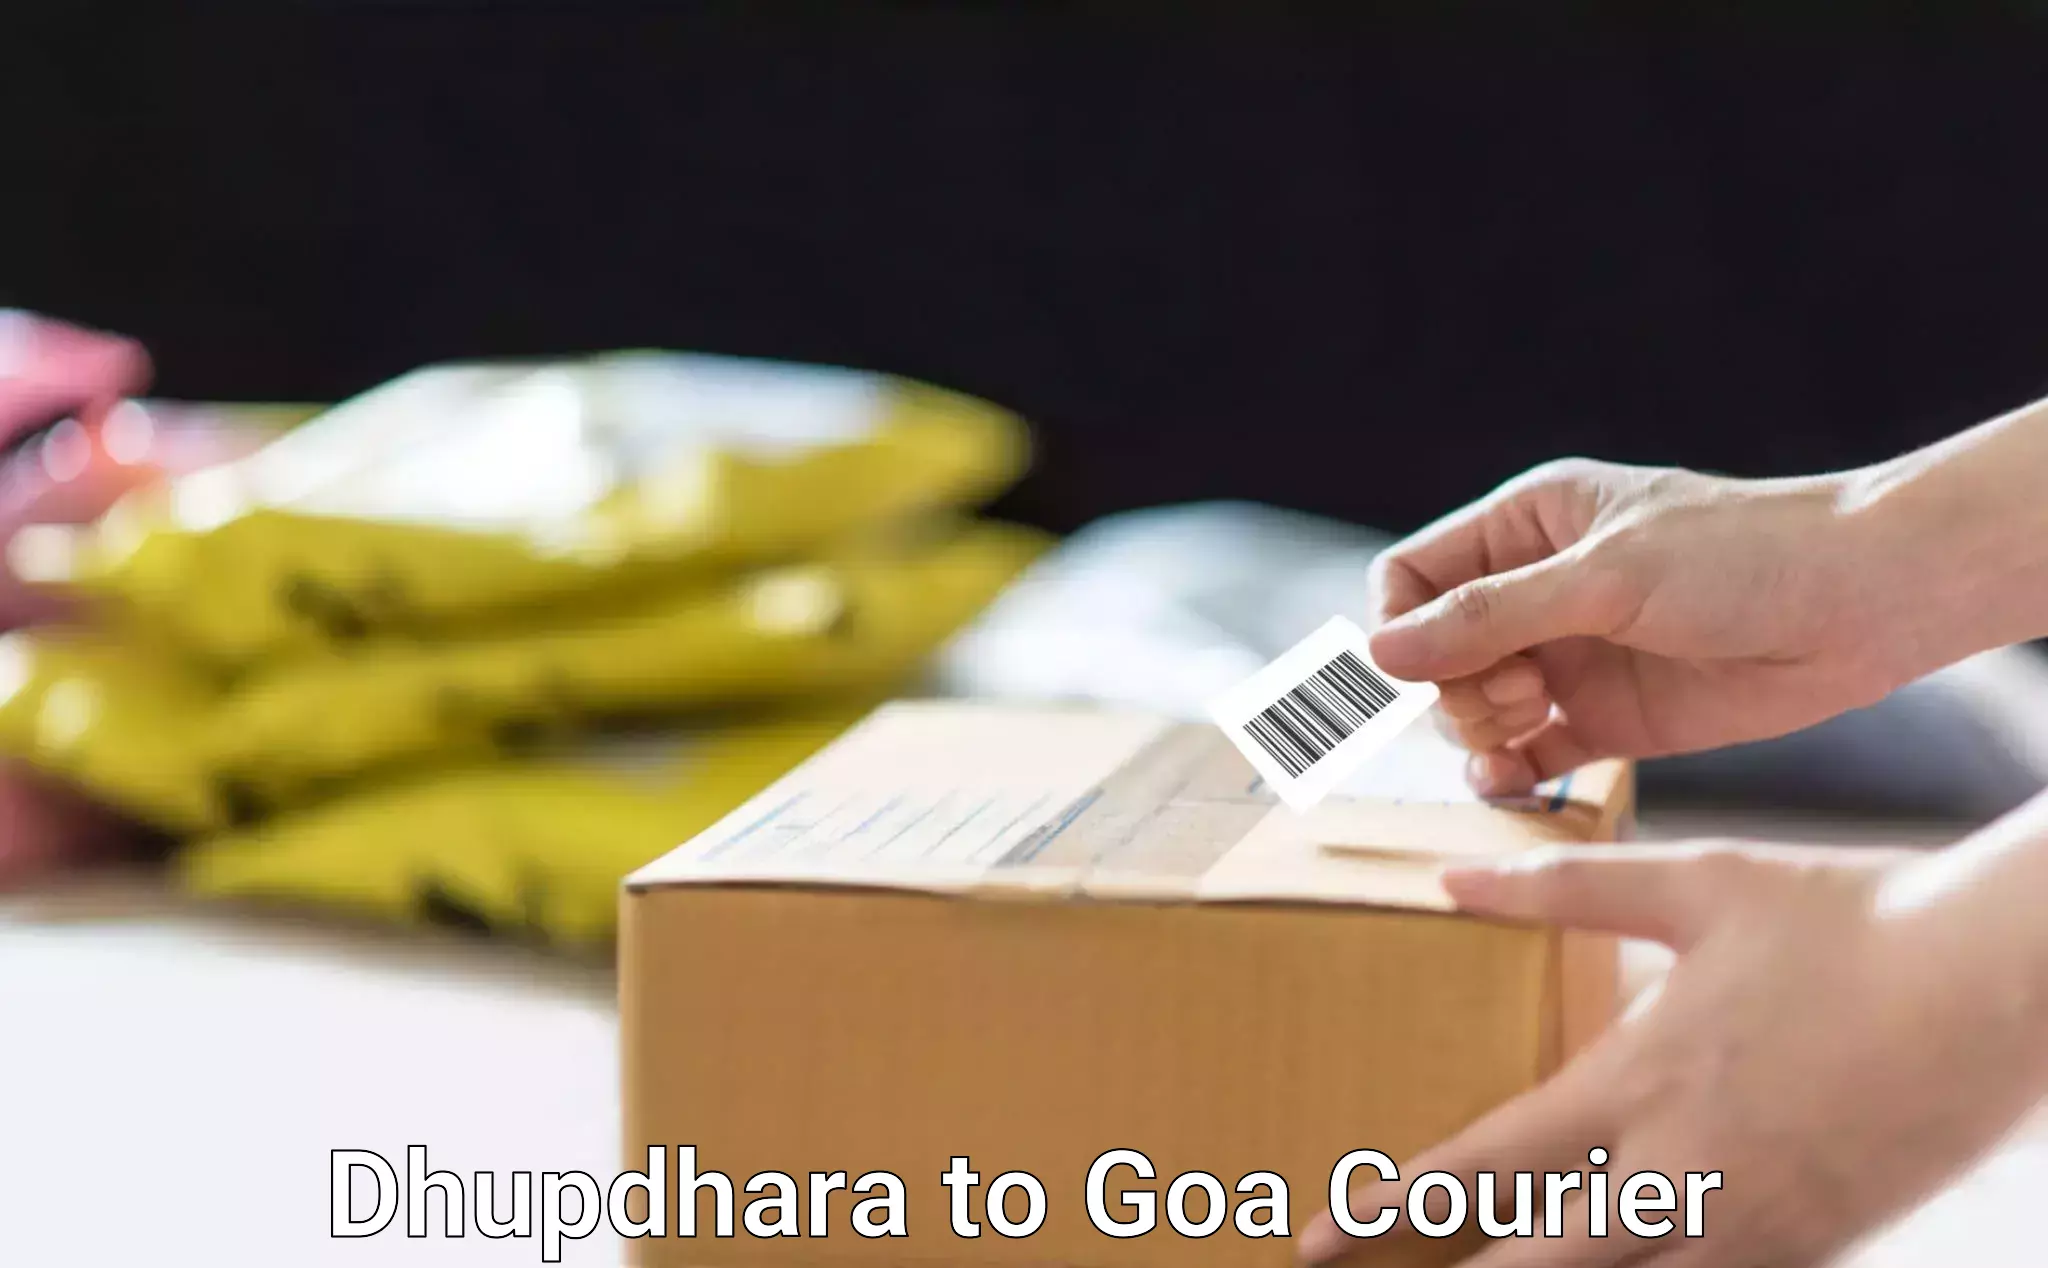 Smart shipping technology Dhupdhara to NIT Goa